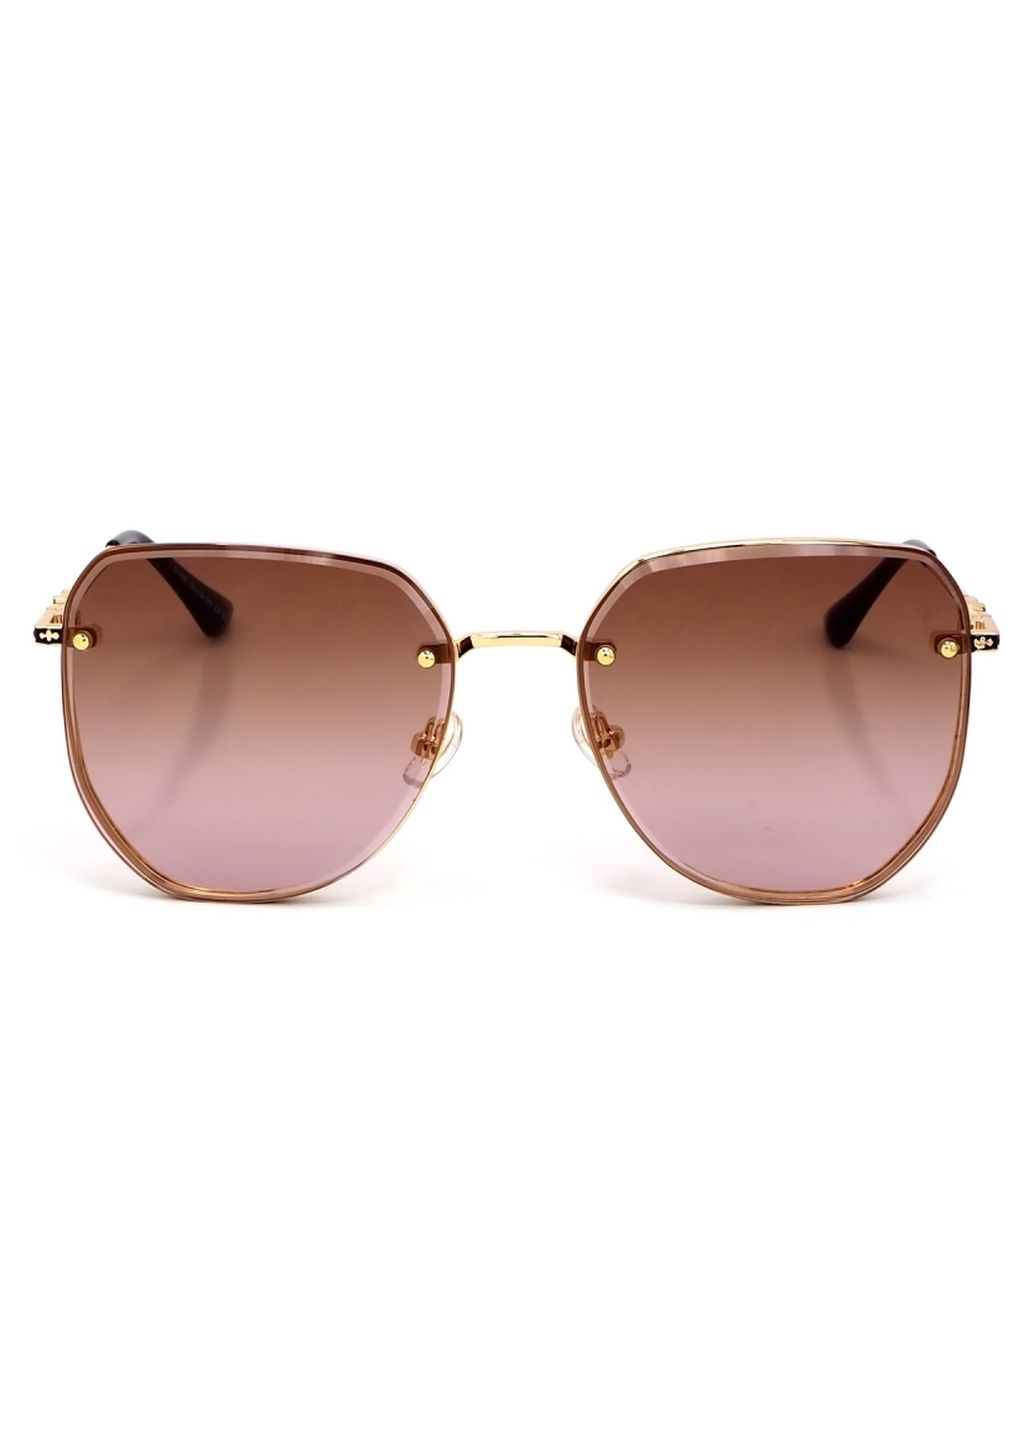 Купить Женские солнцезащитные очки Merlini с поляризацией S31842 117122 - Золотистый в интернет-магазине